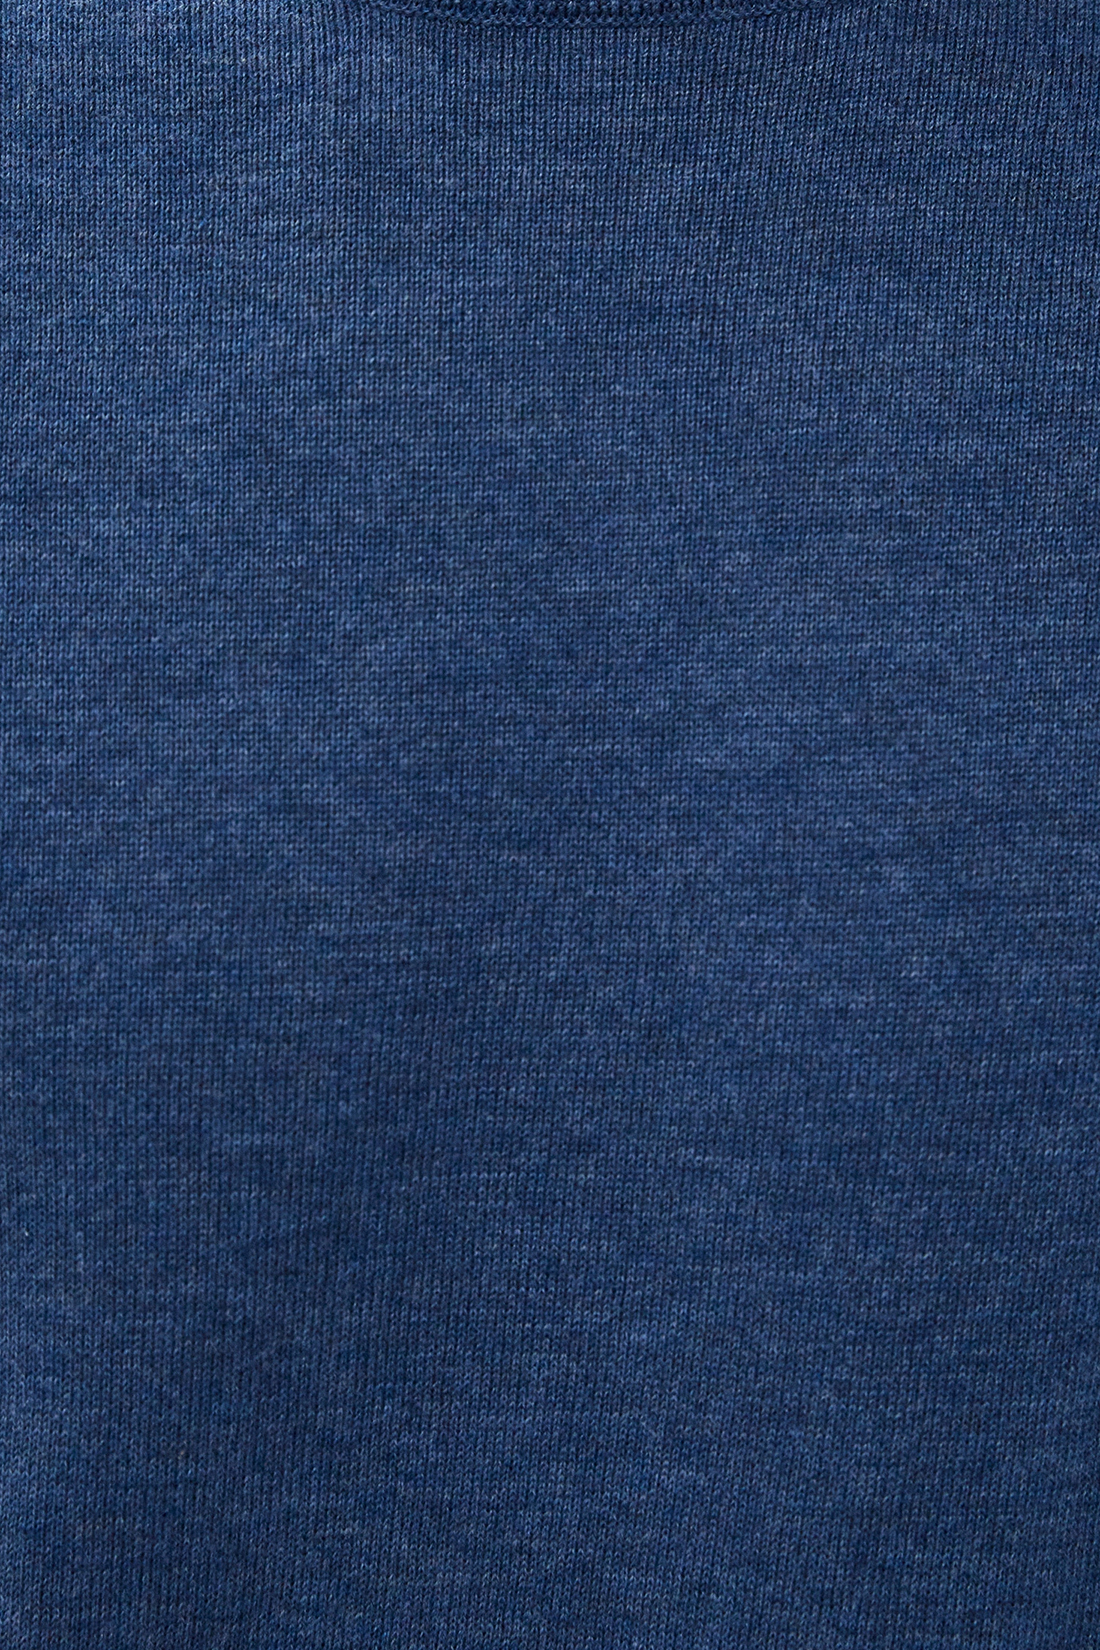 Базовый джемпер с хлопком (арт. baon B630701), размер S, цвет baltic blue melange#синий Базовый джемпер с хлопком (арт. baon B630701) - фото 3